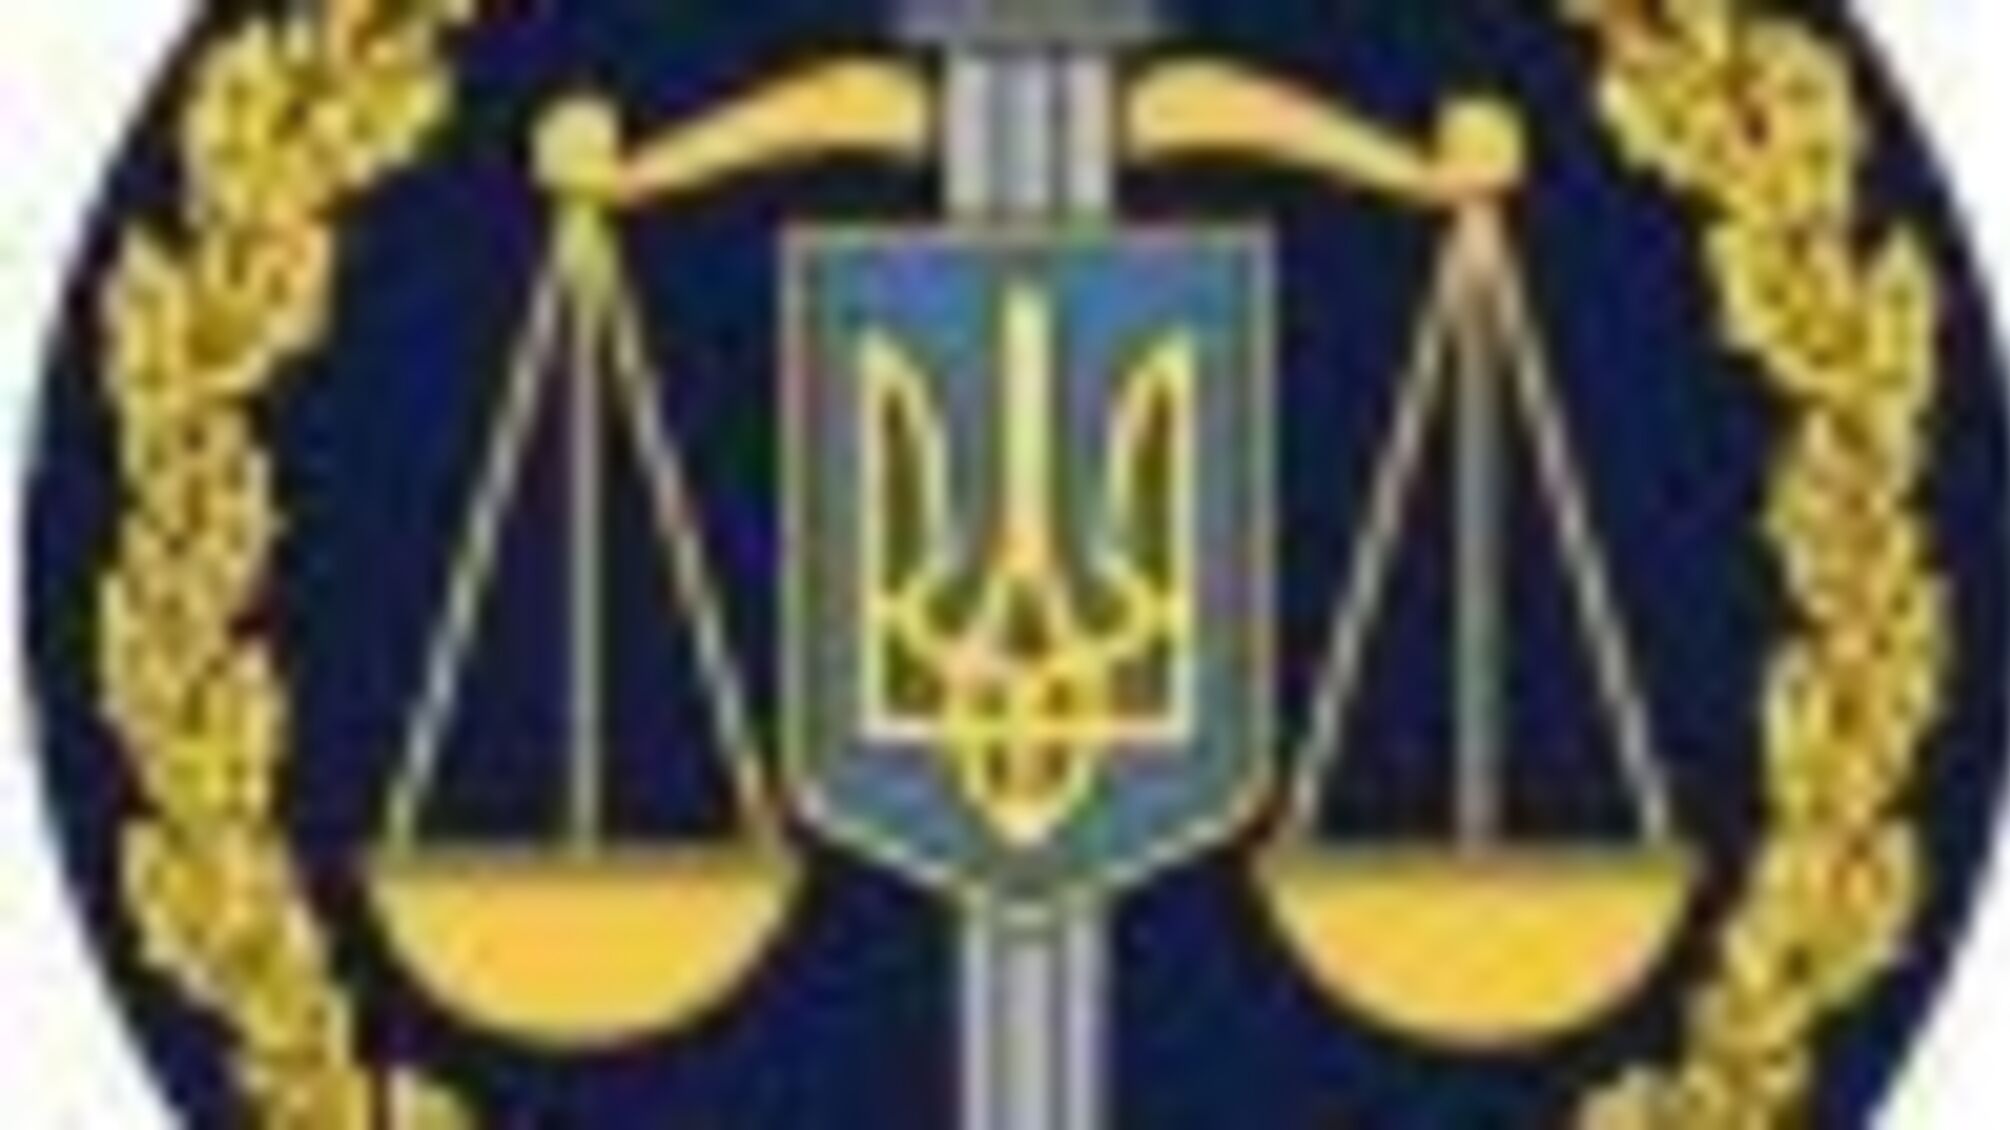 Захист прав людини у місцях несвободи: в окружній прокуратурі відбулась зустріч із представниками Уповноваженого Верховної Ради України з прав людини (ФОТО)